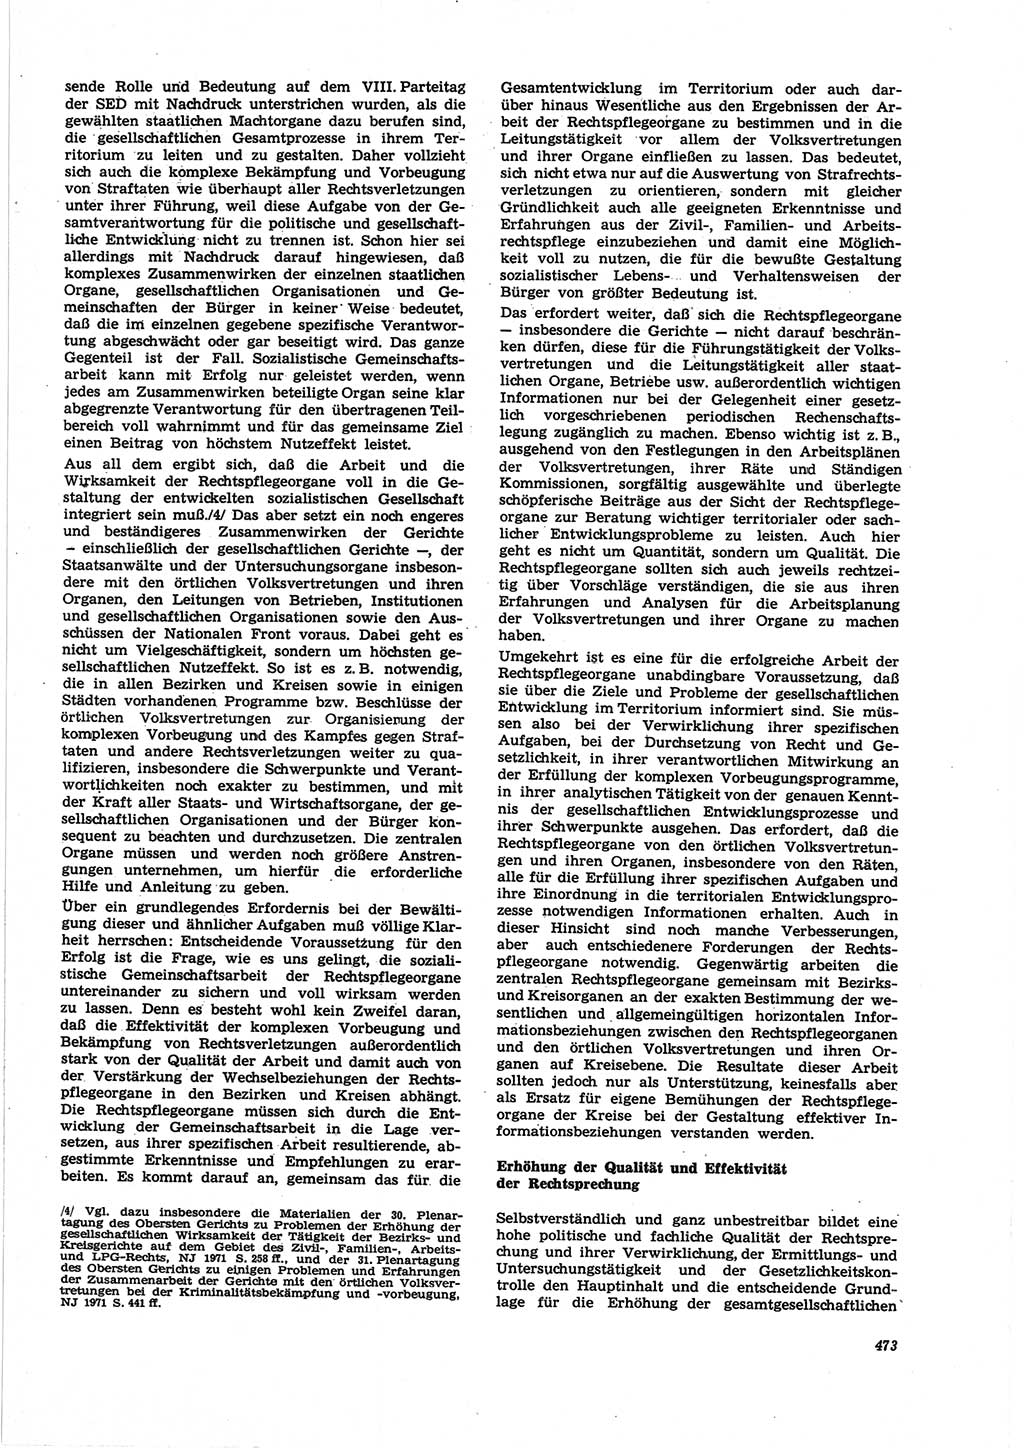 Neue Justiz (NJ), Zeitschrift für Recht und Rechtswissenschaft [Deutsche Demokratische Republik (DDR)], 25. Jahrgang 1971, Seite 473 (NJ DDR 1971, S. 473)